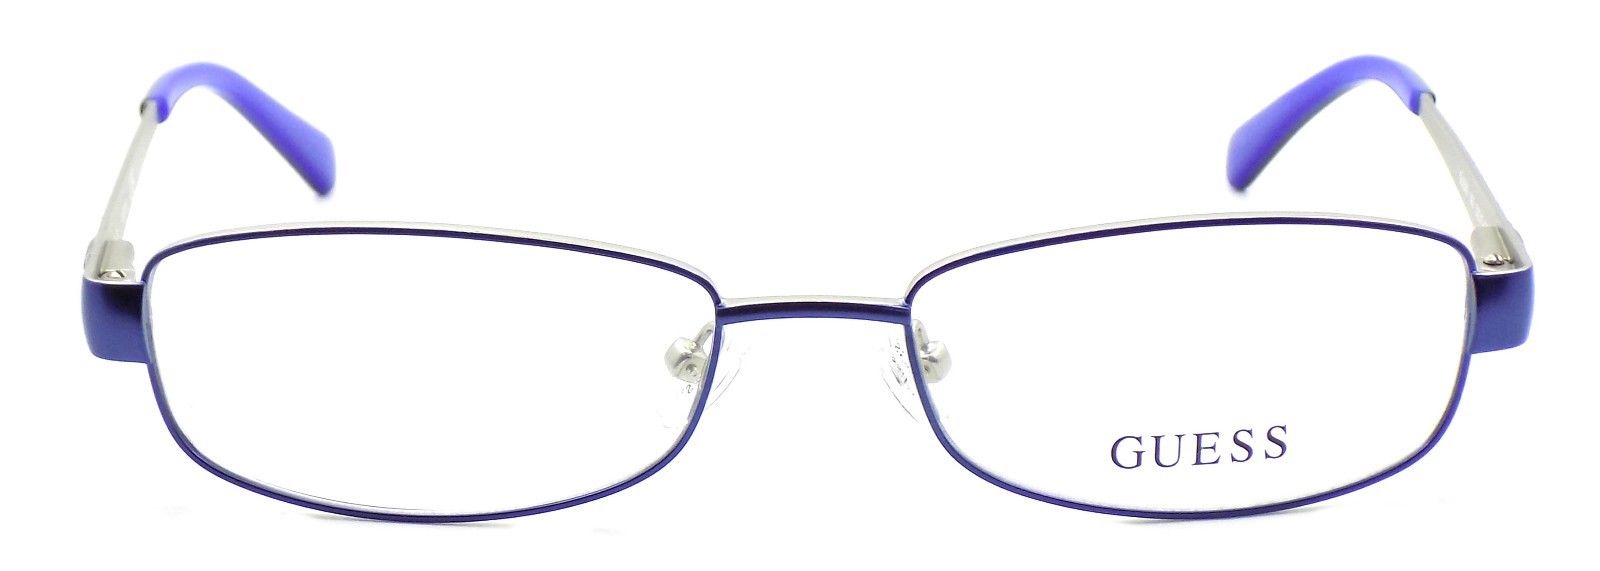 2-GUESS GU2569 092 Women's Eyeglasses Frames 53-17-135 Blue + CASE-664689783939-IKSpecs